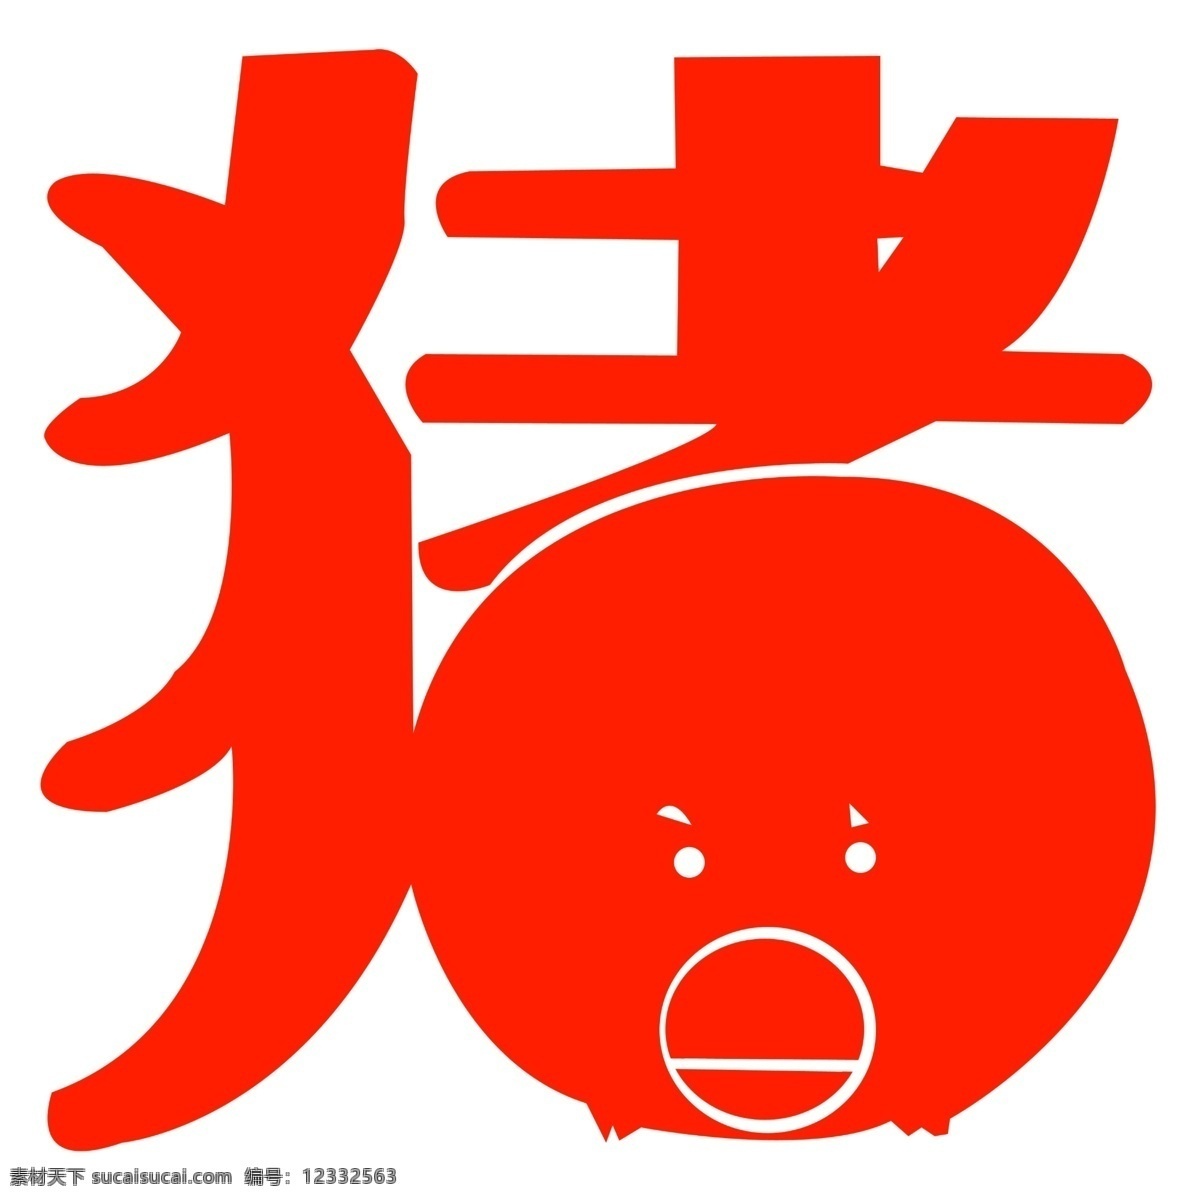 十二生肖 猪 猪模板下载 剪纸 红色 镂空 春节 节日素材 分层 源文件